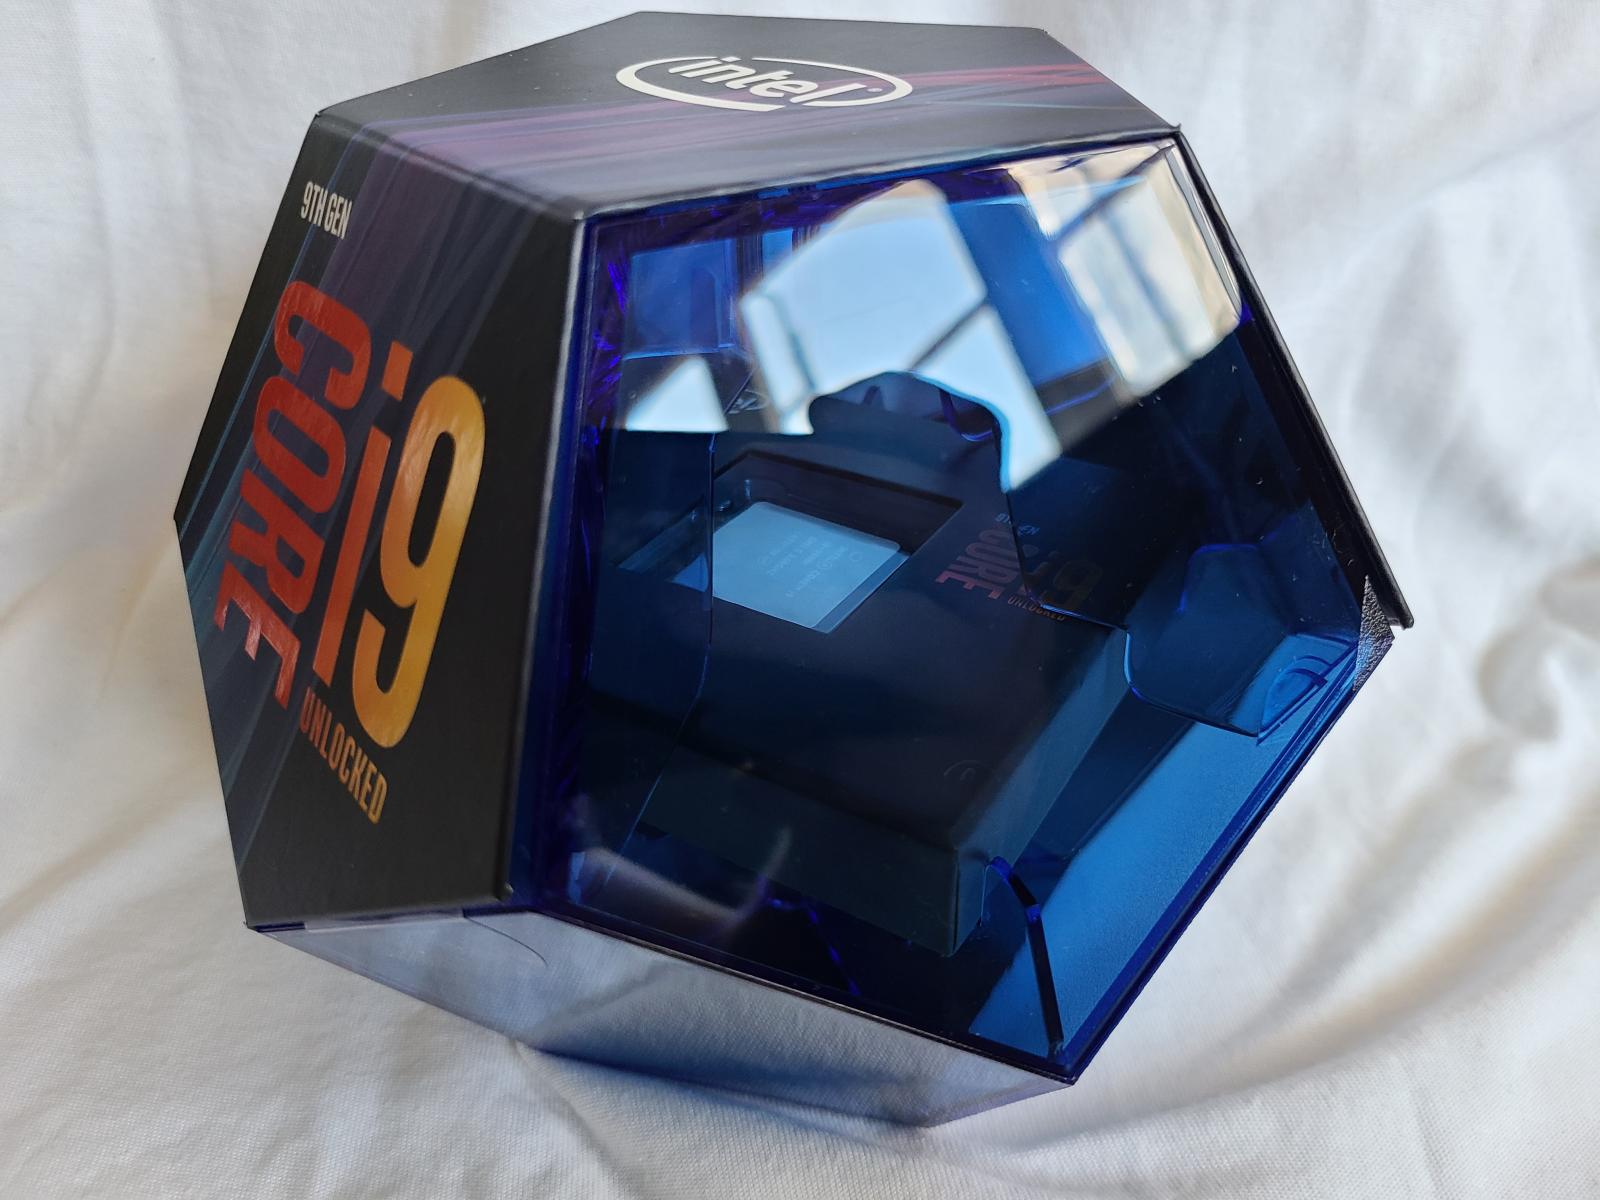 For sale Core i9-9900K in original box